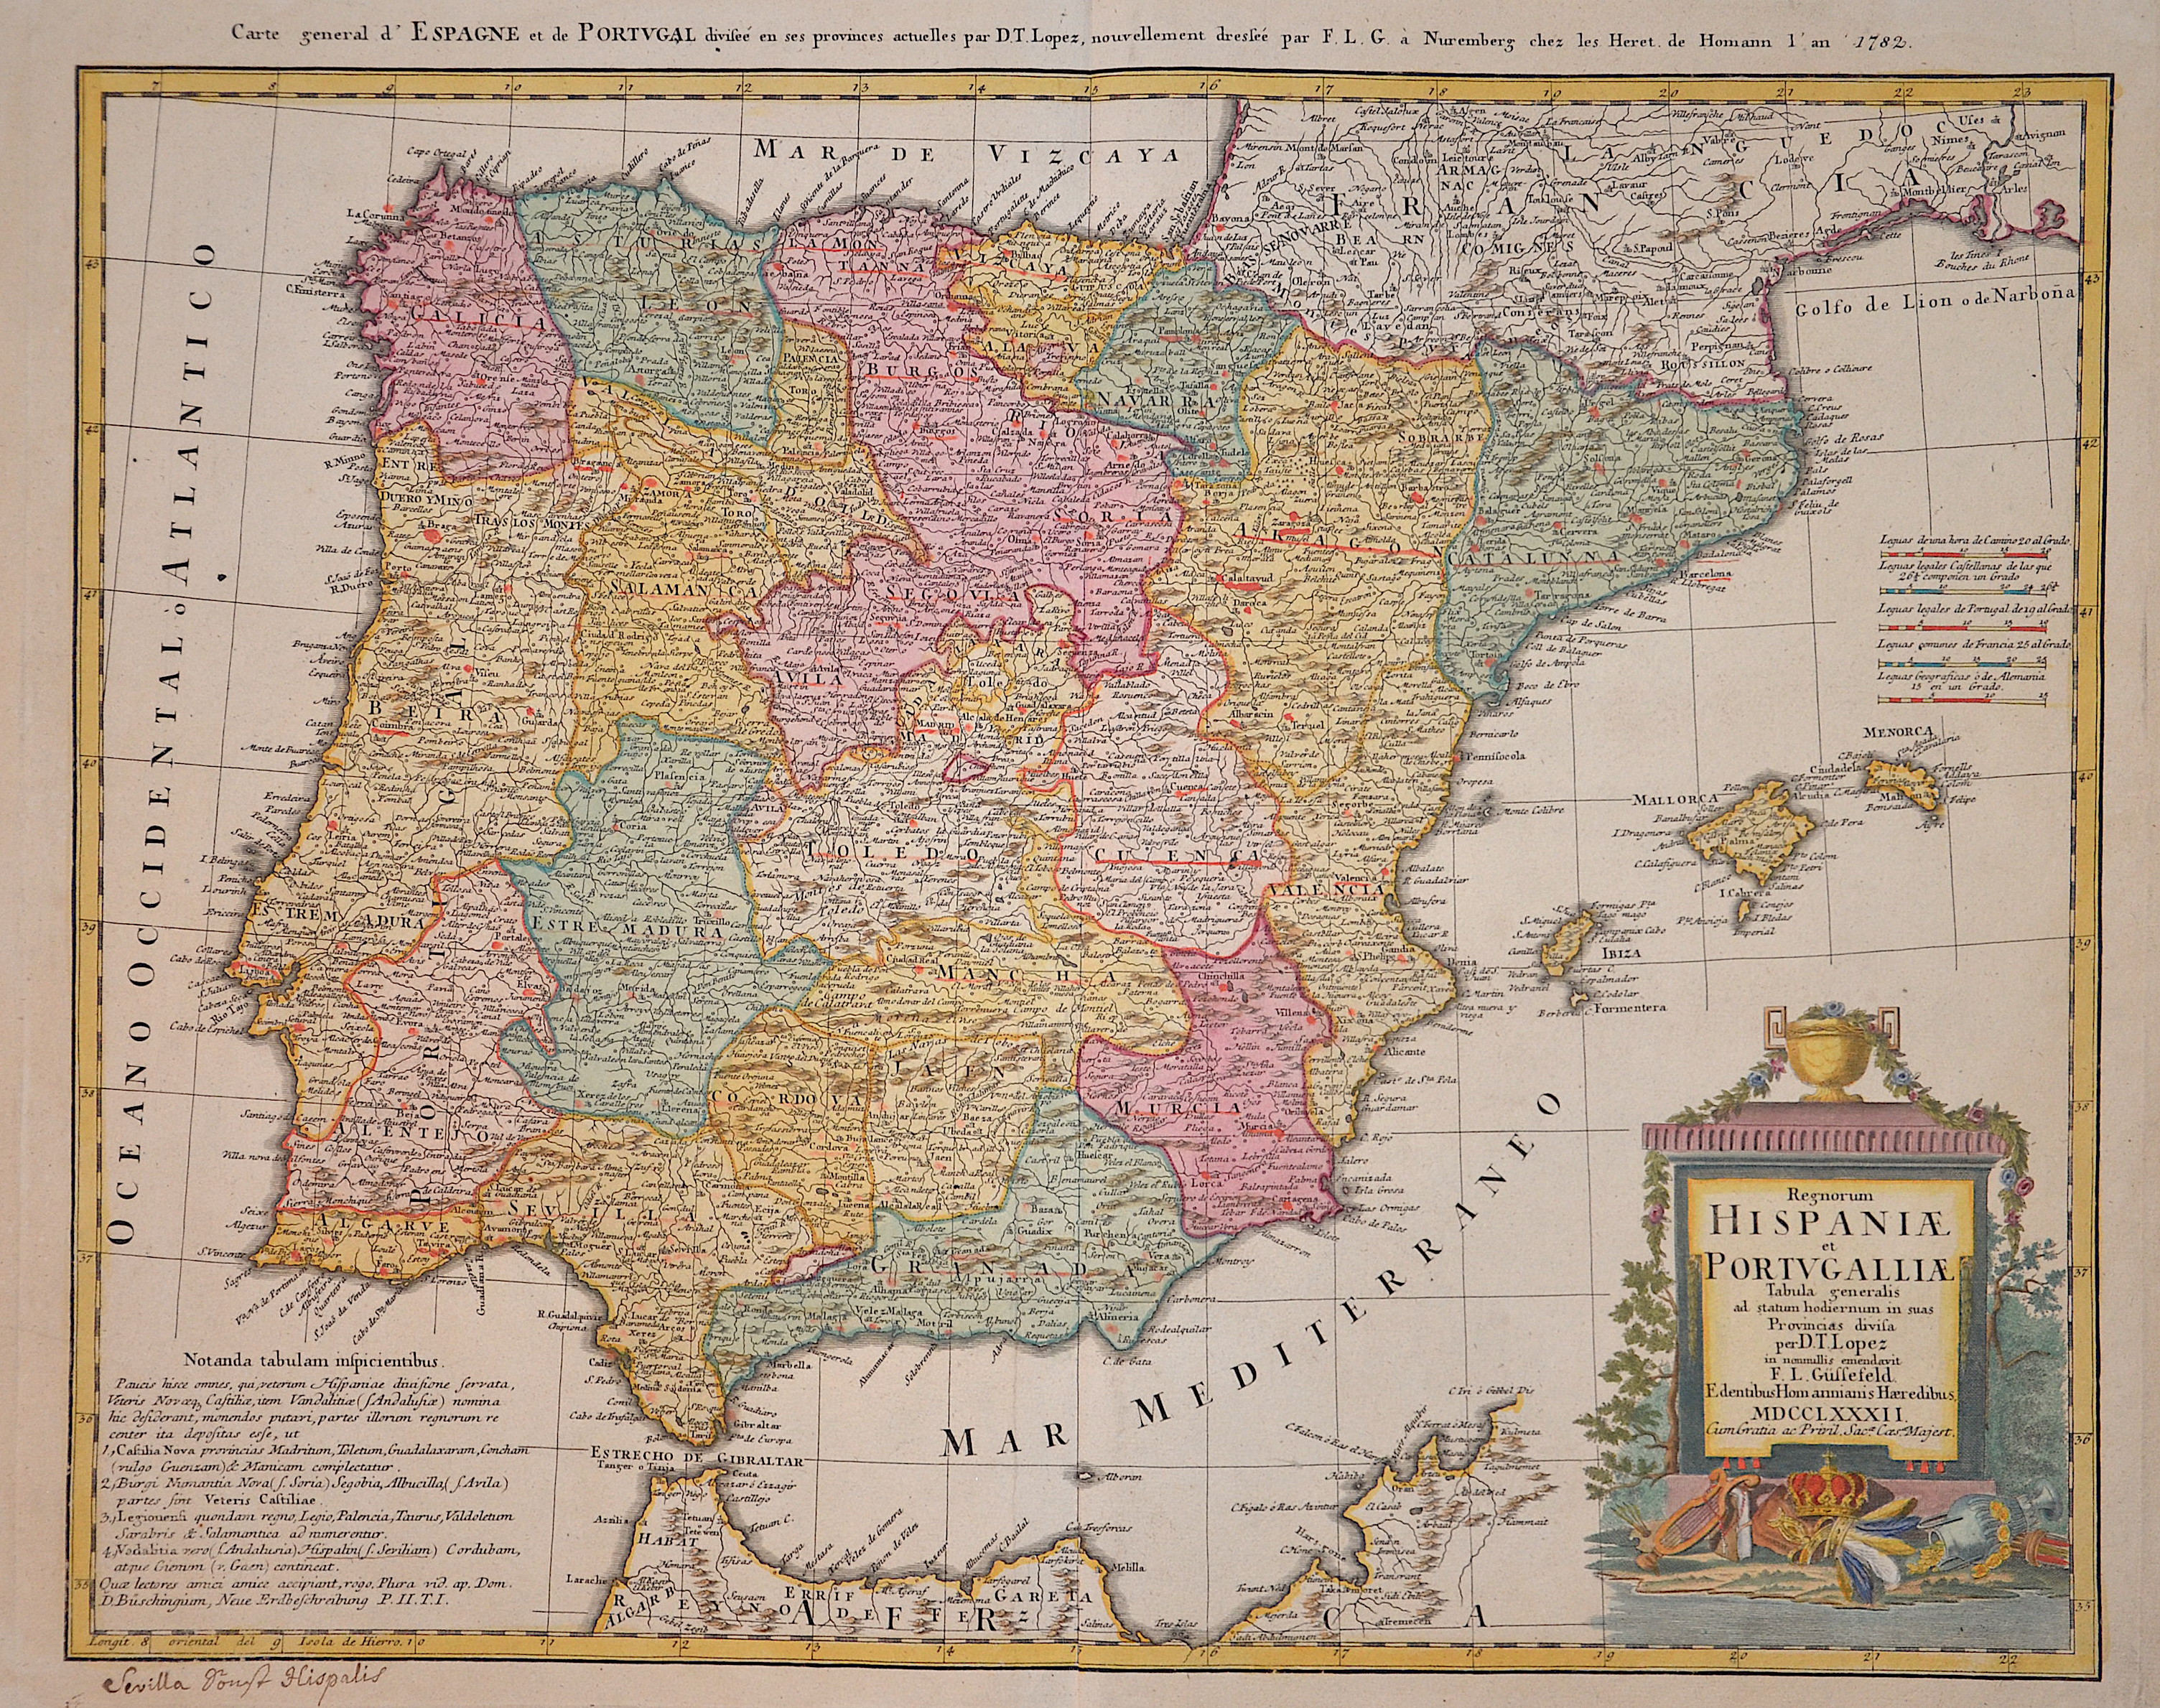 Homann / Güssefeld  Regnorum Hispaniae et Portugalliae. Tabula generalis ad statum hodiernum in suas Provincias divisa per D.T. Lopez…